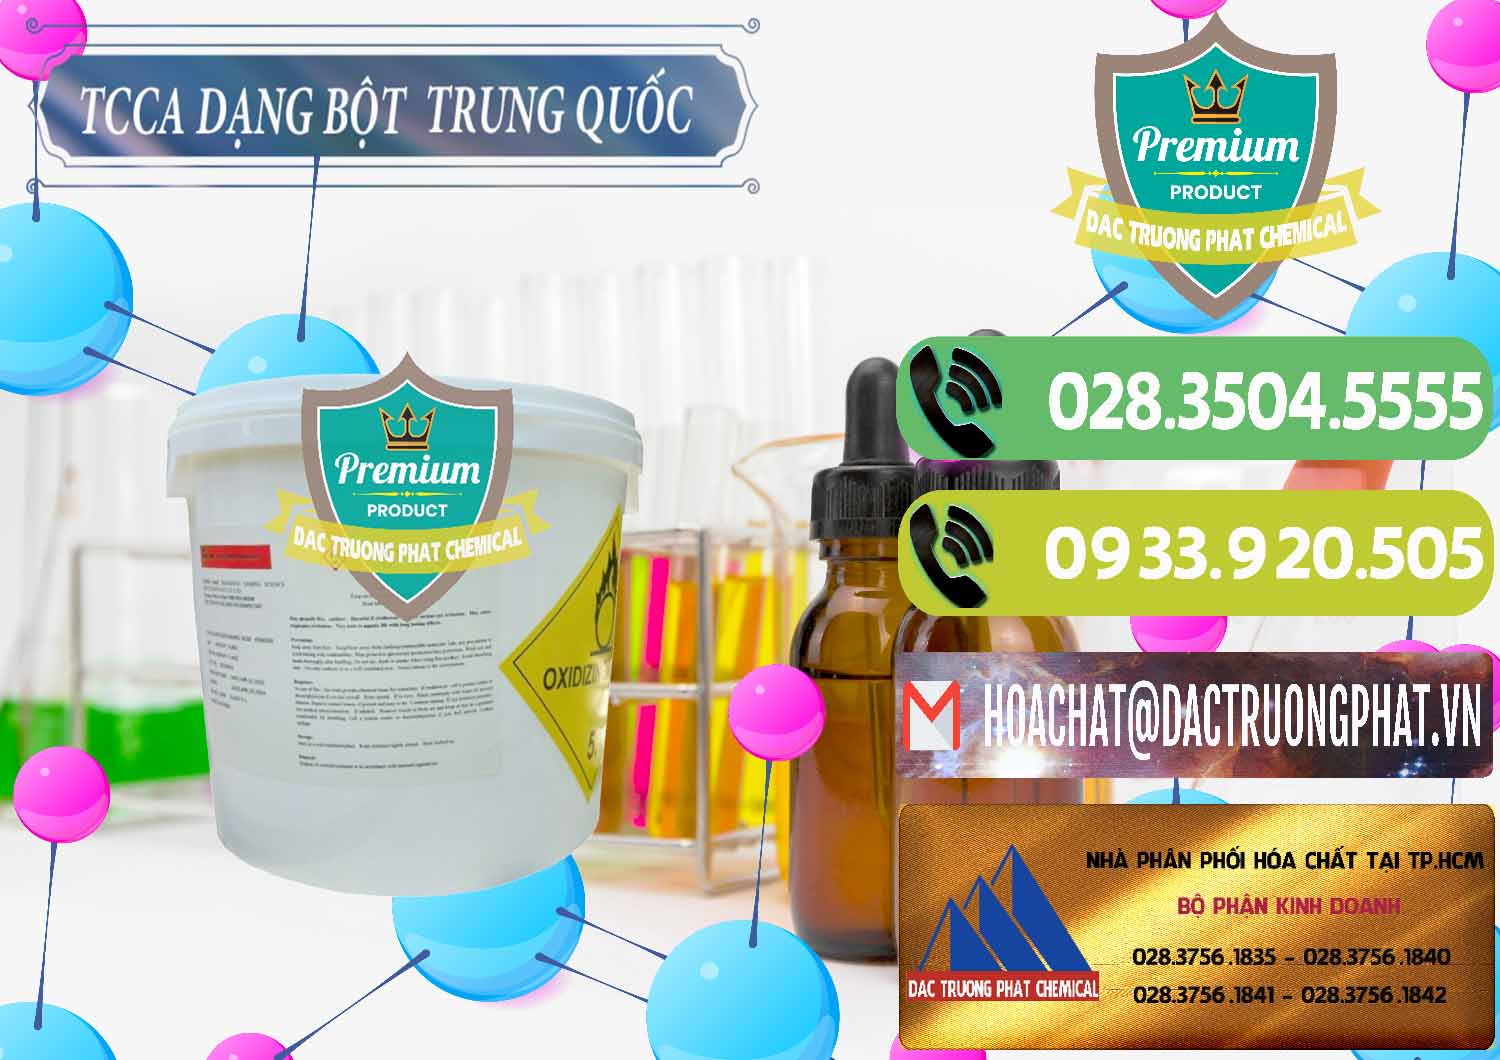 Cty bán & cung ứng TCCA - Acid Trichloroisocyanuric Dạng Bột Thùng 5kg Trung Quốc China - 0378 - Công ty chuyên phân phối ( cung ứng ) hóa chất tại TP.HCM - hoachatmientay.vn